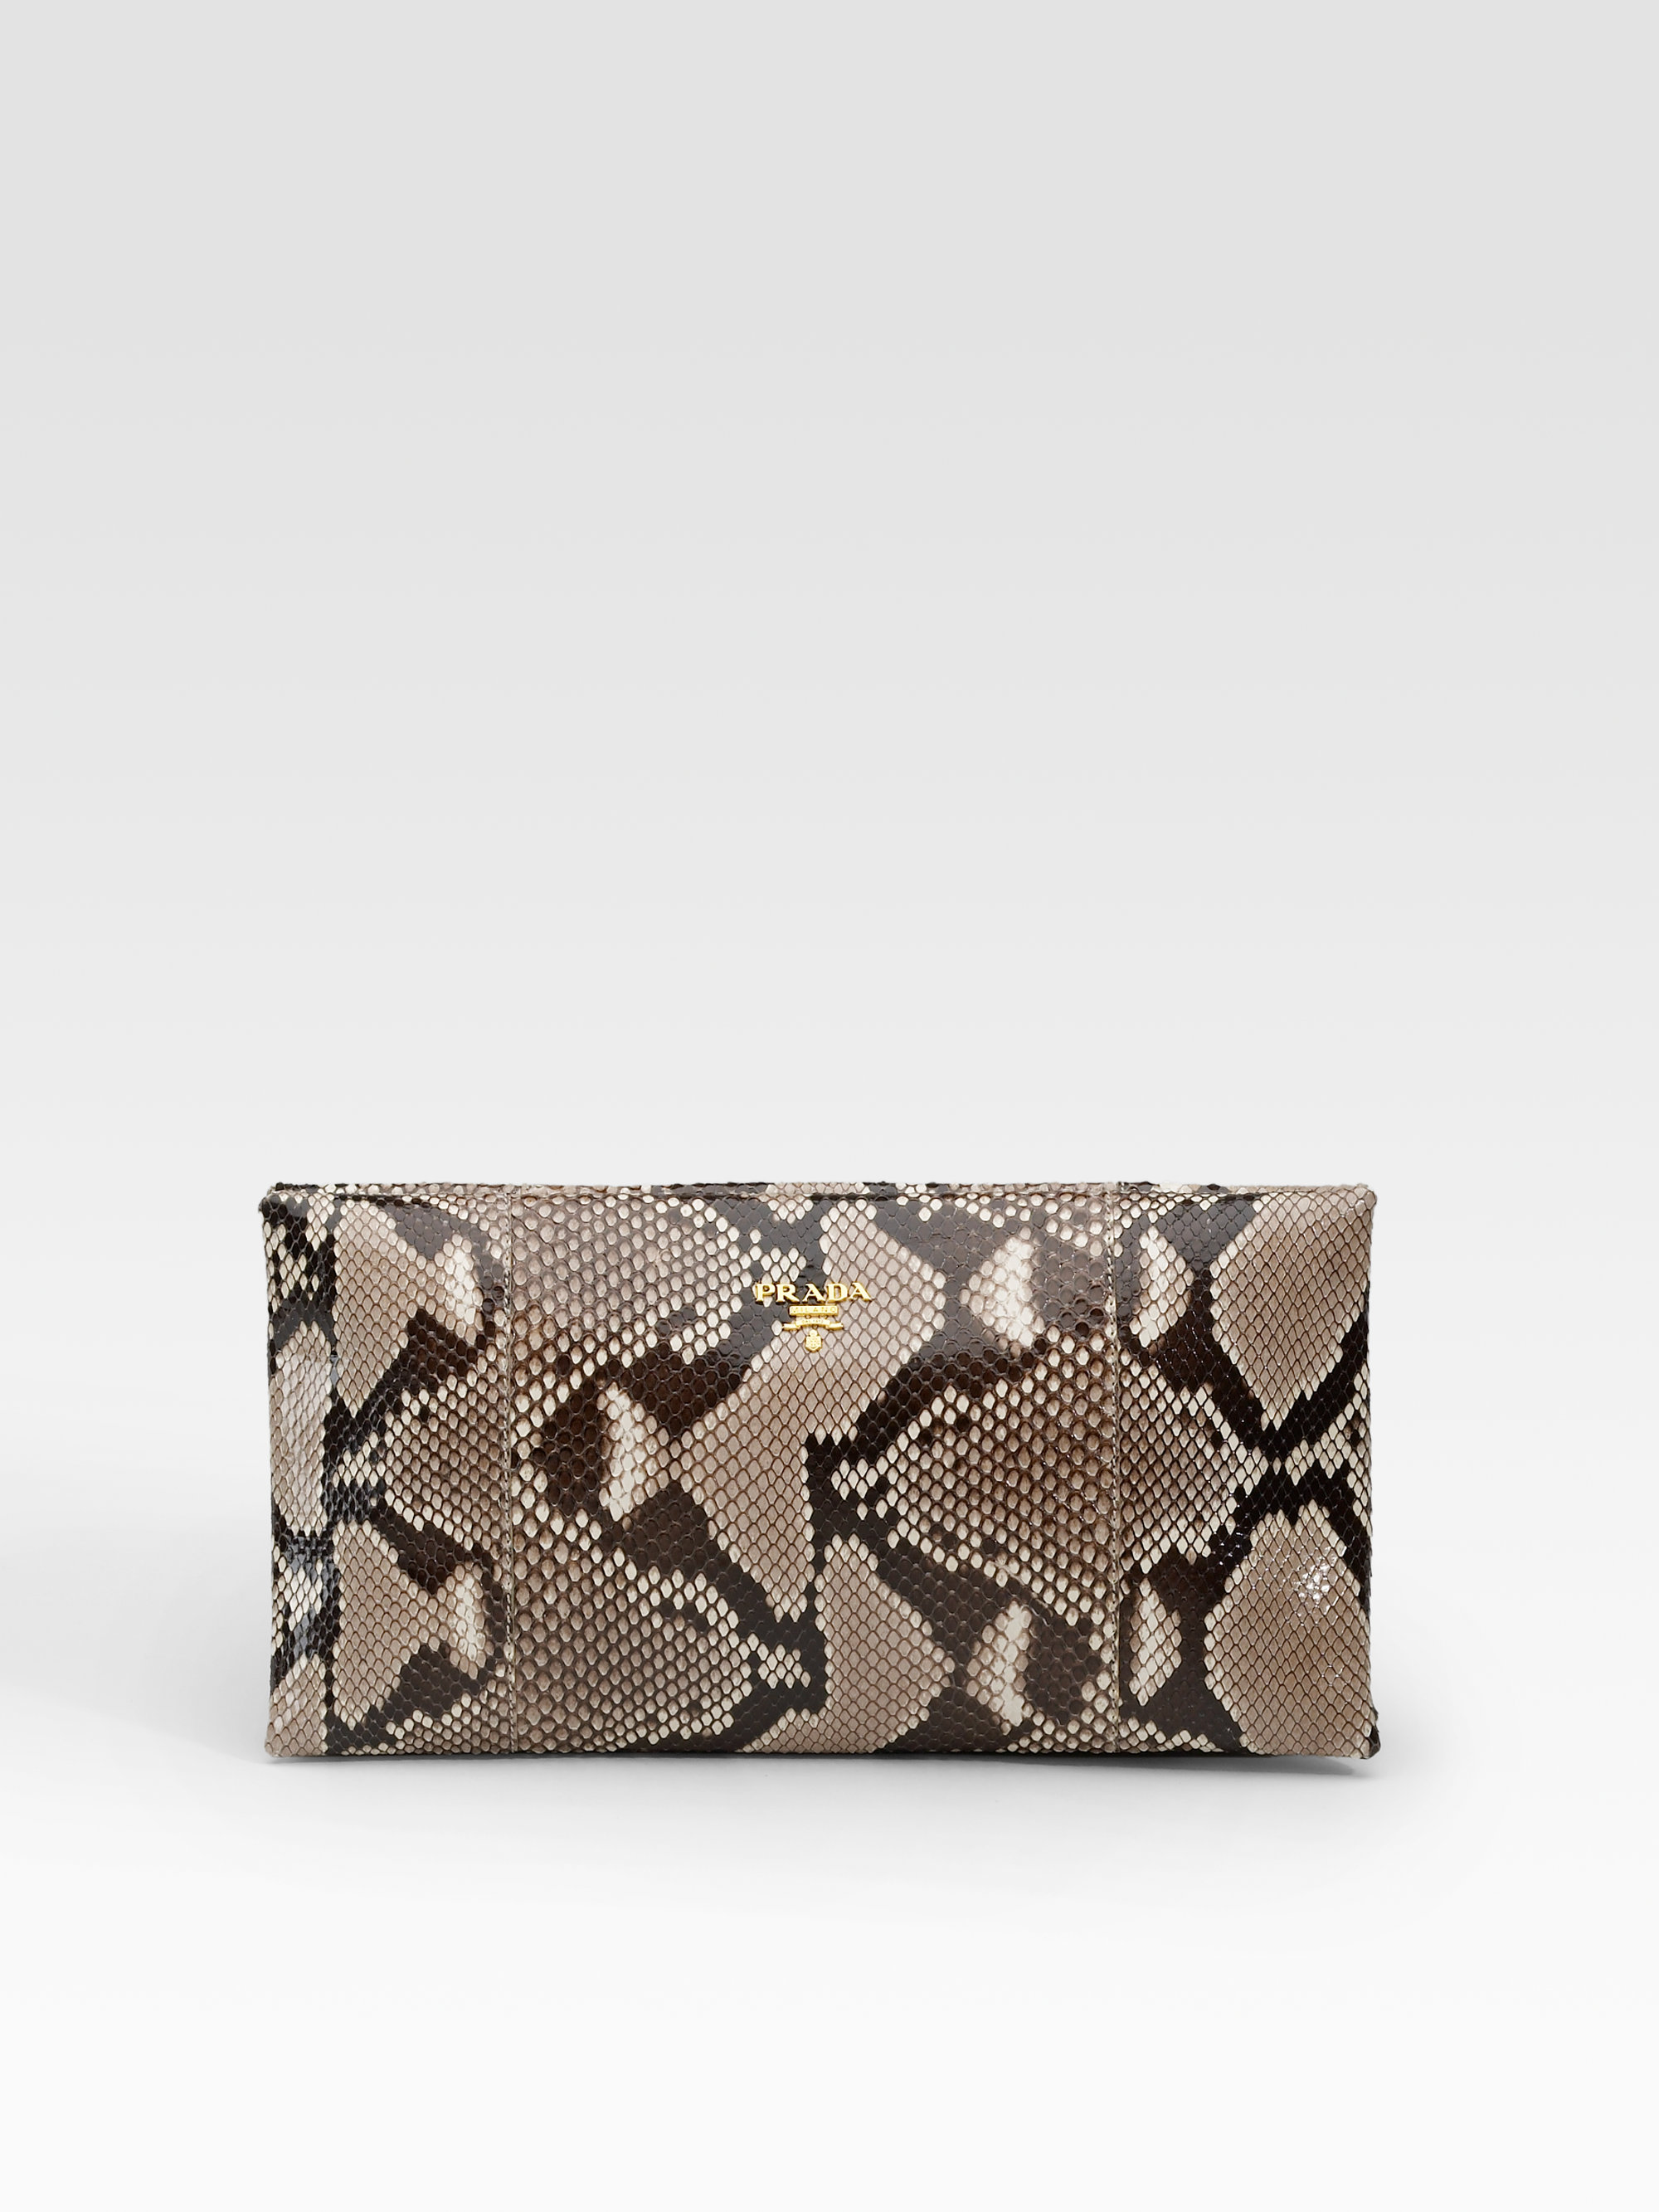 suede prada handbag - prada-stone-python-clutch-product-1-7707916-781949799.jpeg